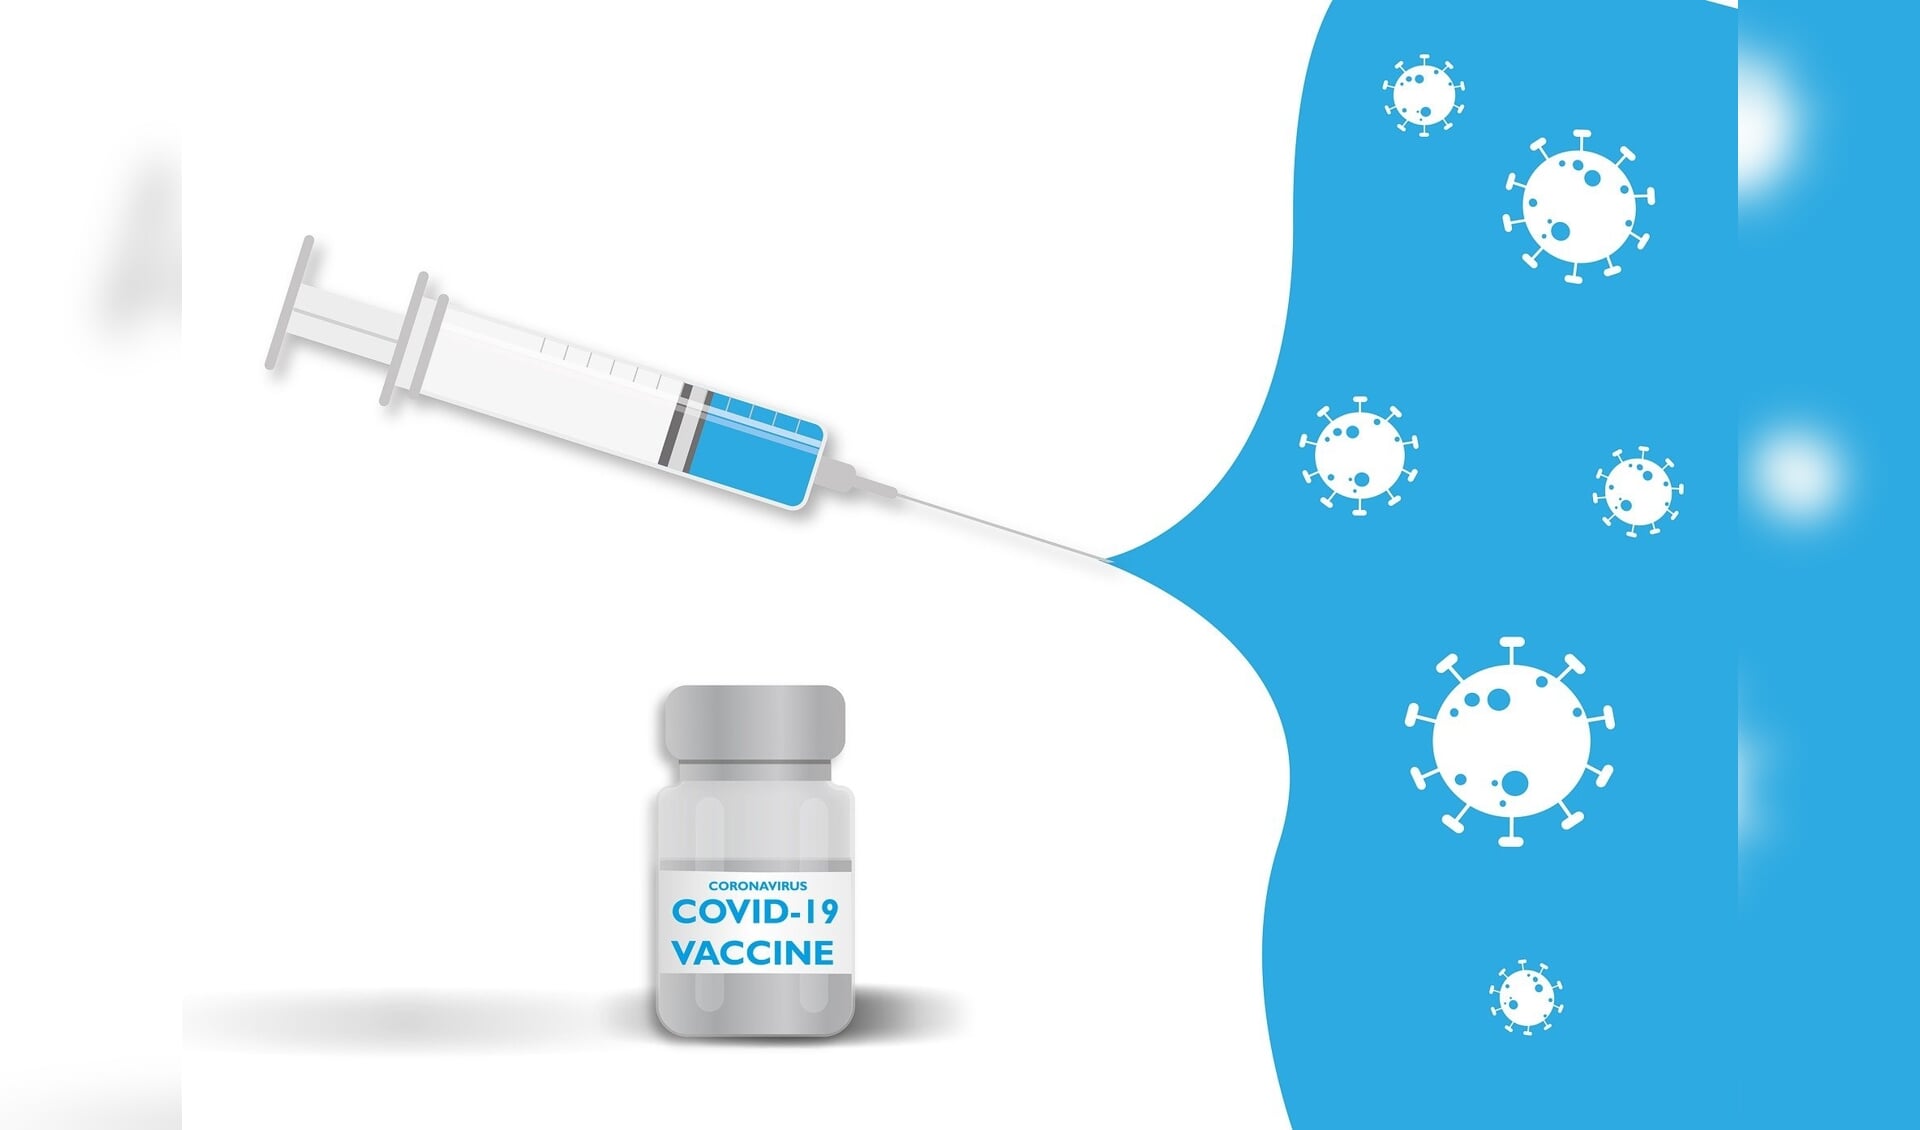 Op 15 januari start ook de regio Hollands Midden met vaccineren tegen COVID-19.